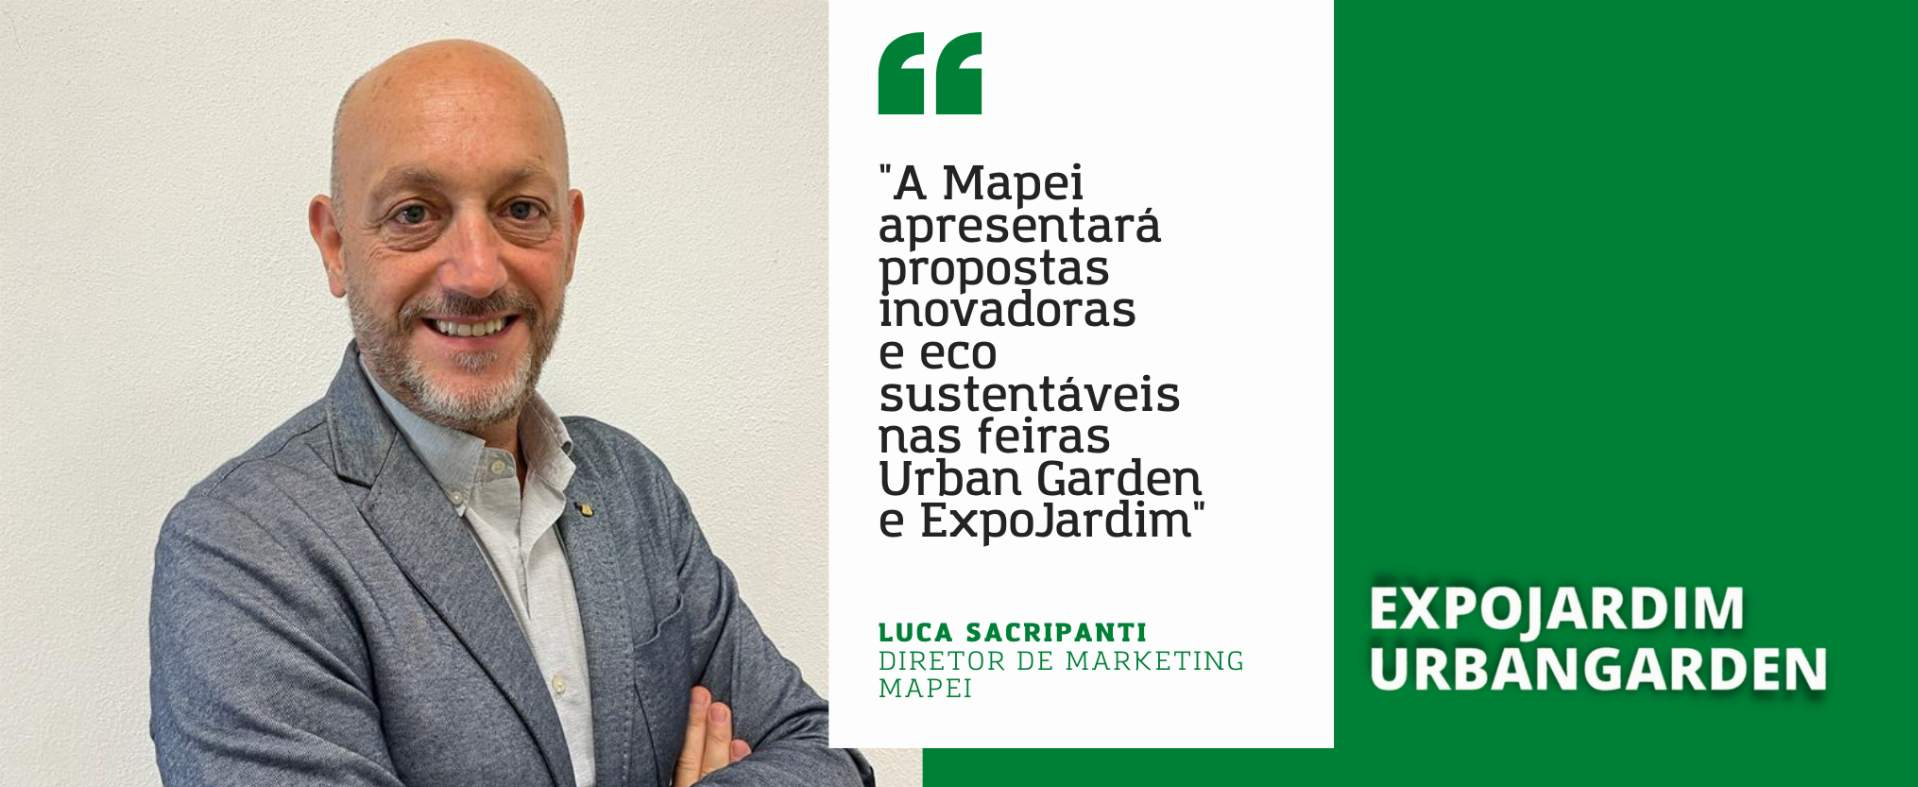 Mapei: “Iremos apresentar propostas inovadoras e eco sustentáveis nas feiras Urban Garden e ExpoJardim"